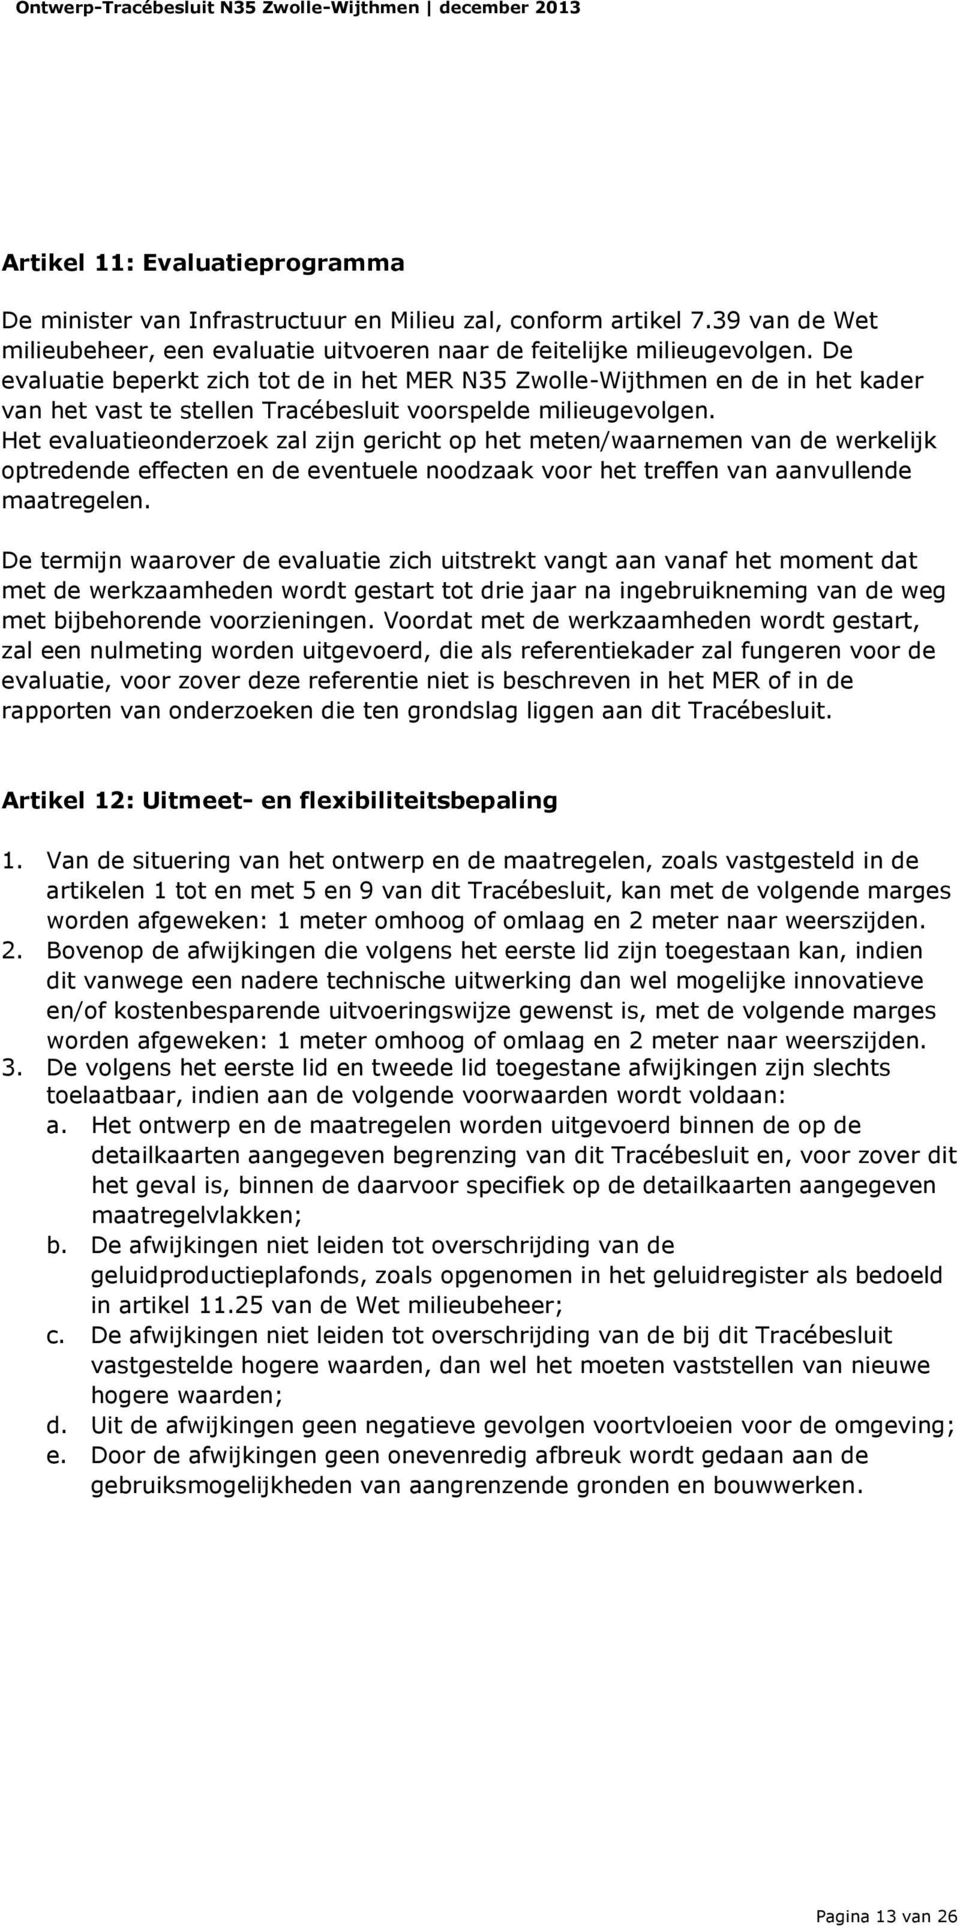 De evaluatie beperkt zich tot de in het MER N35 Zwolle-Wijthmen en de in het kader van het vast te stellen Tracébesluit voorspelde milieugevolgen.